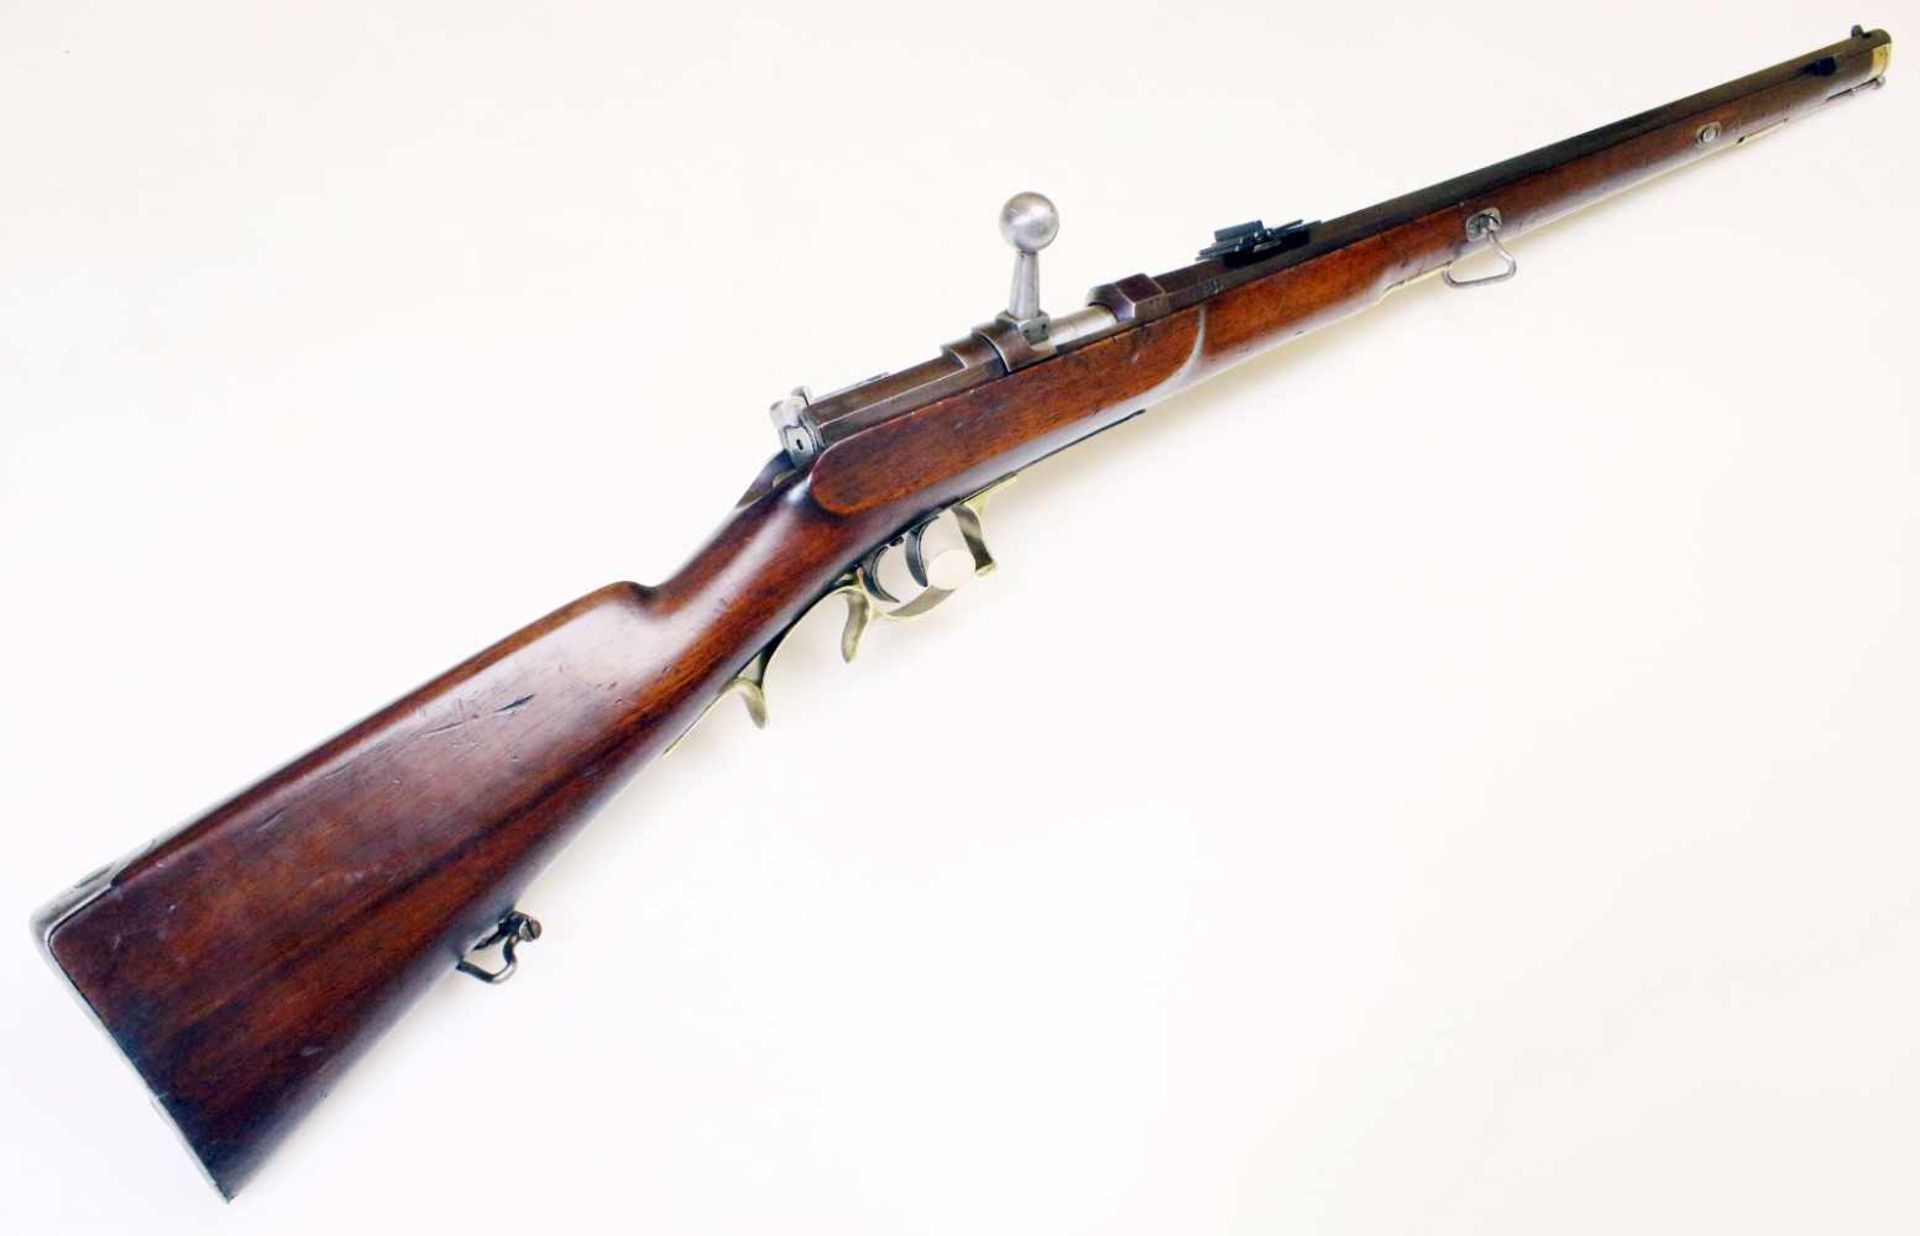 Preussen - Zündnadelbüchse M1865 Nr. 3183, Waffe ist nummerngleich. Vielfach gezogener Oktagonlauf